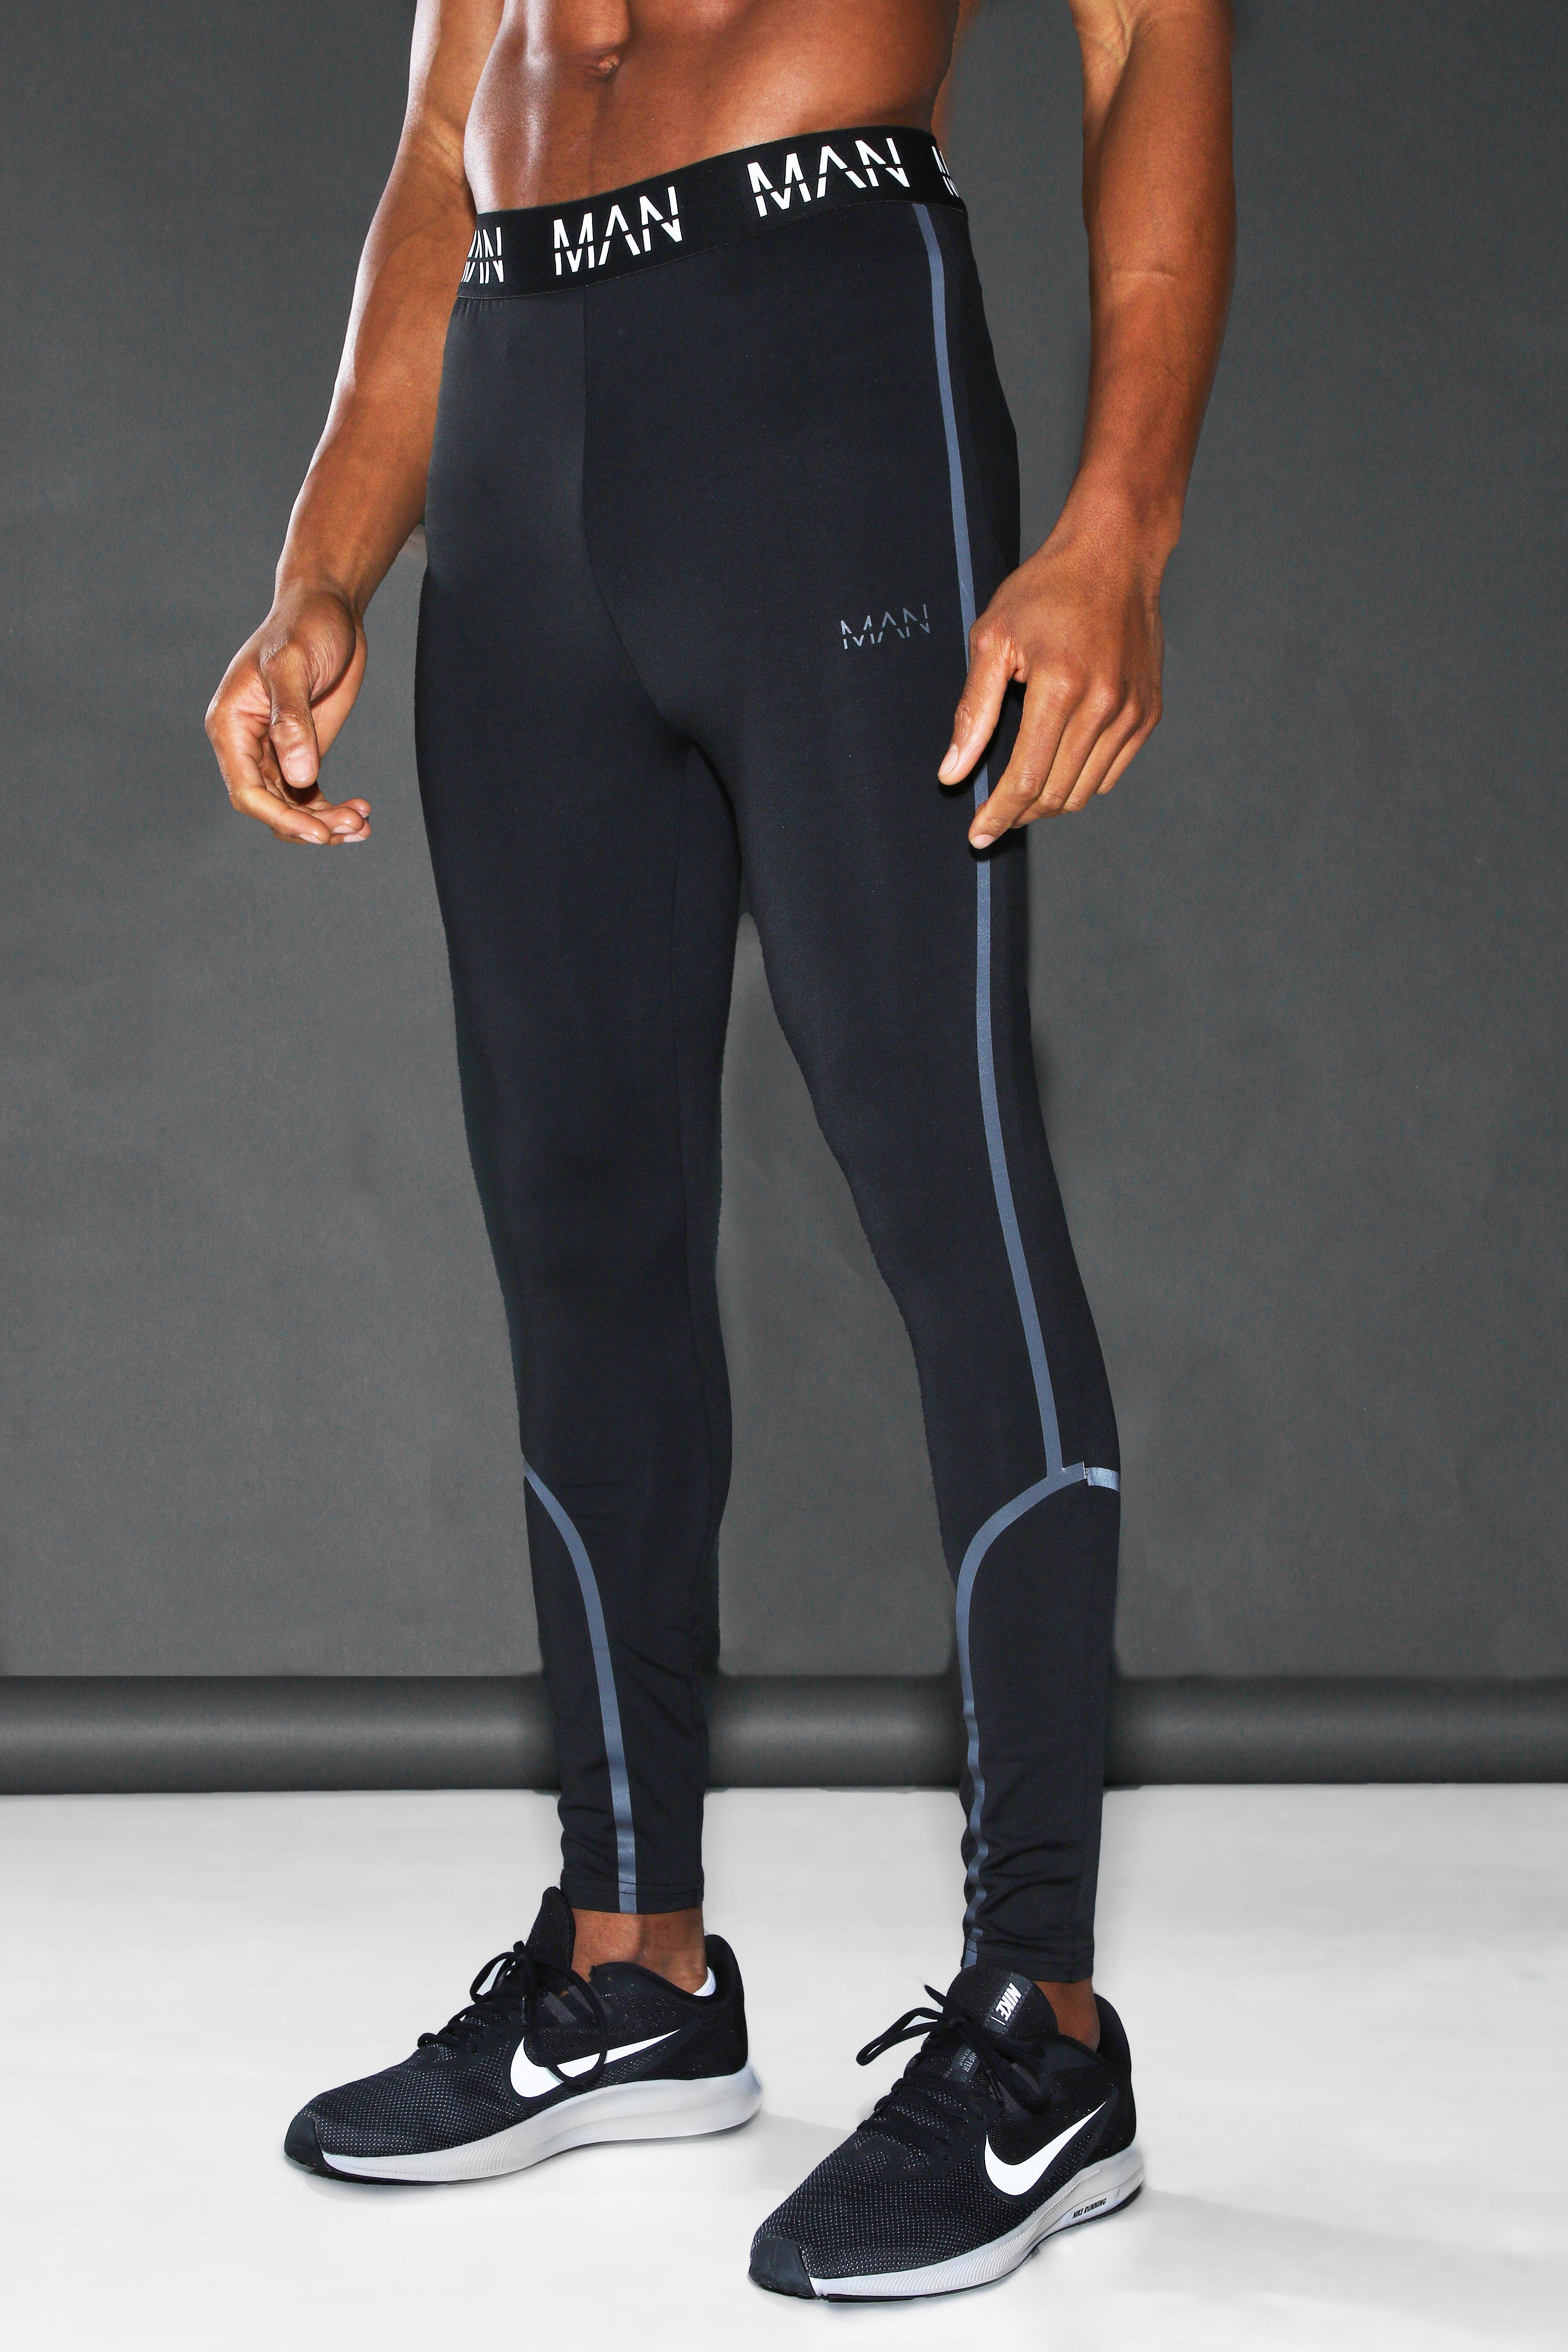 https://media.boohoo.com/i/boohoo/mzz02259_black_xl_3/male-black-man-active-reflective--compression-leggings